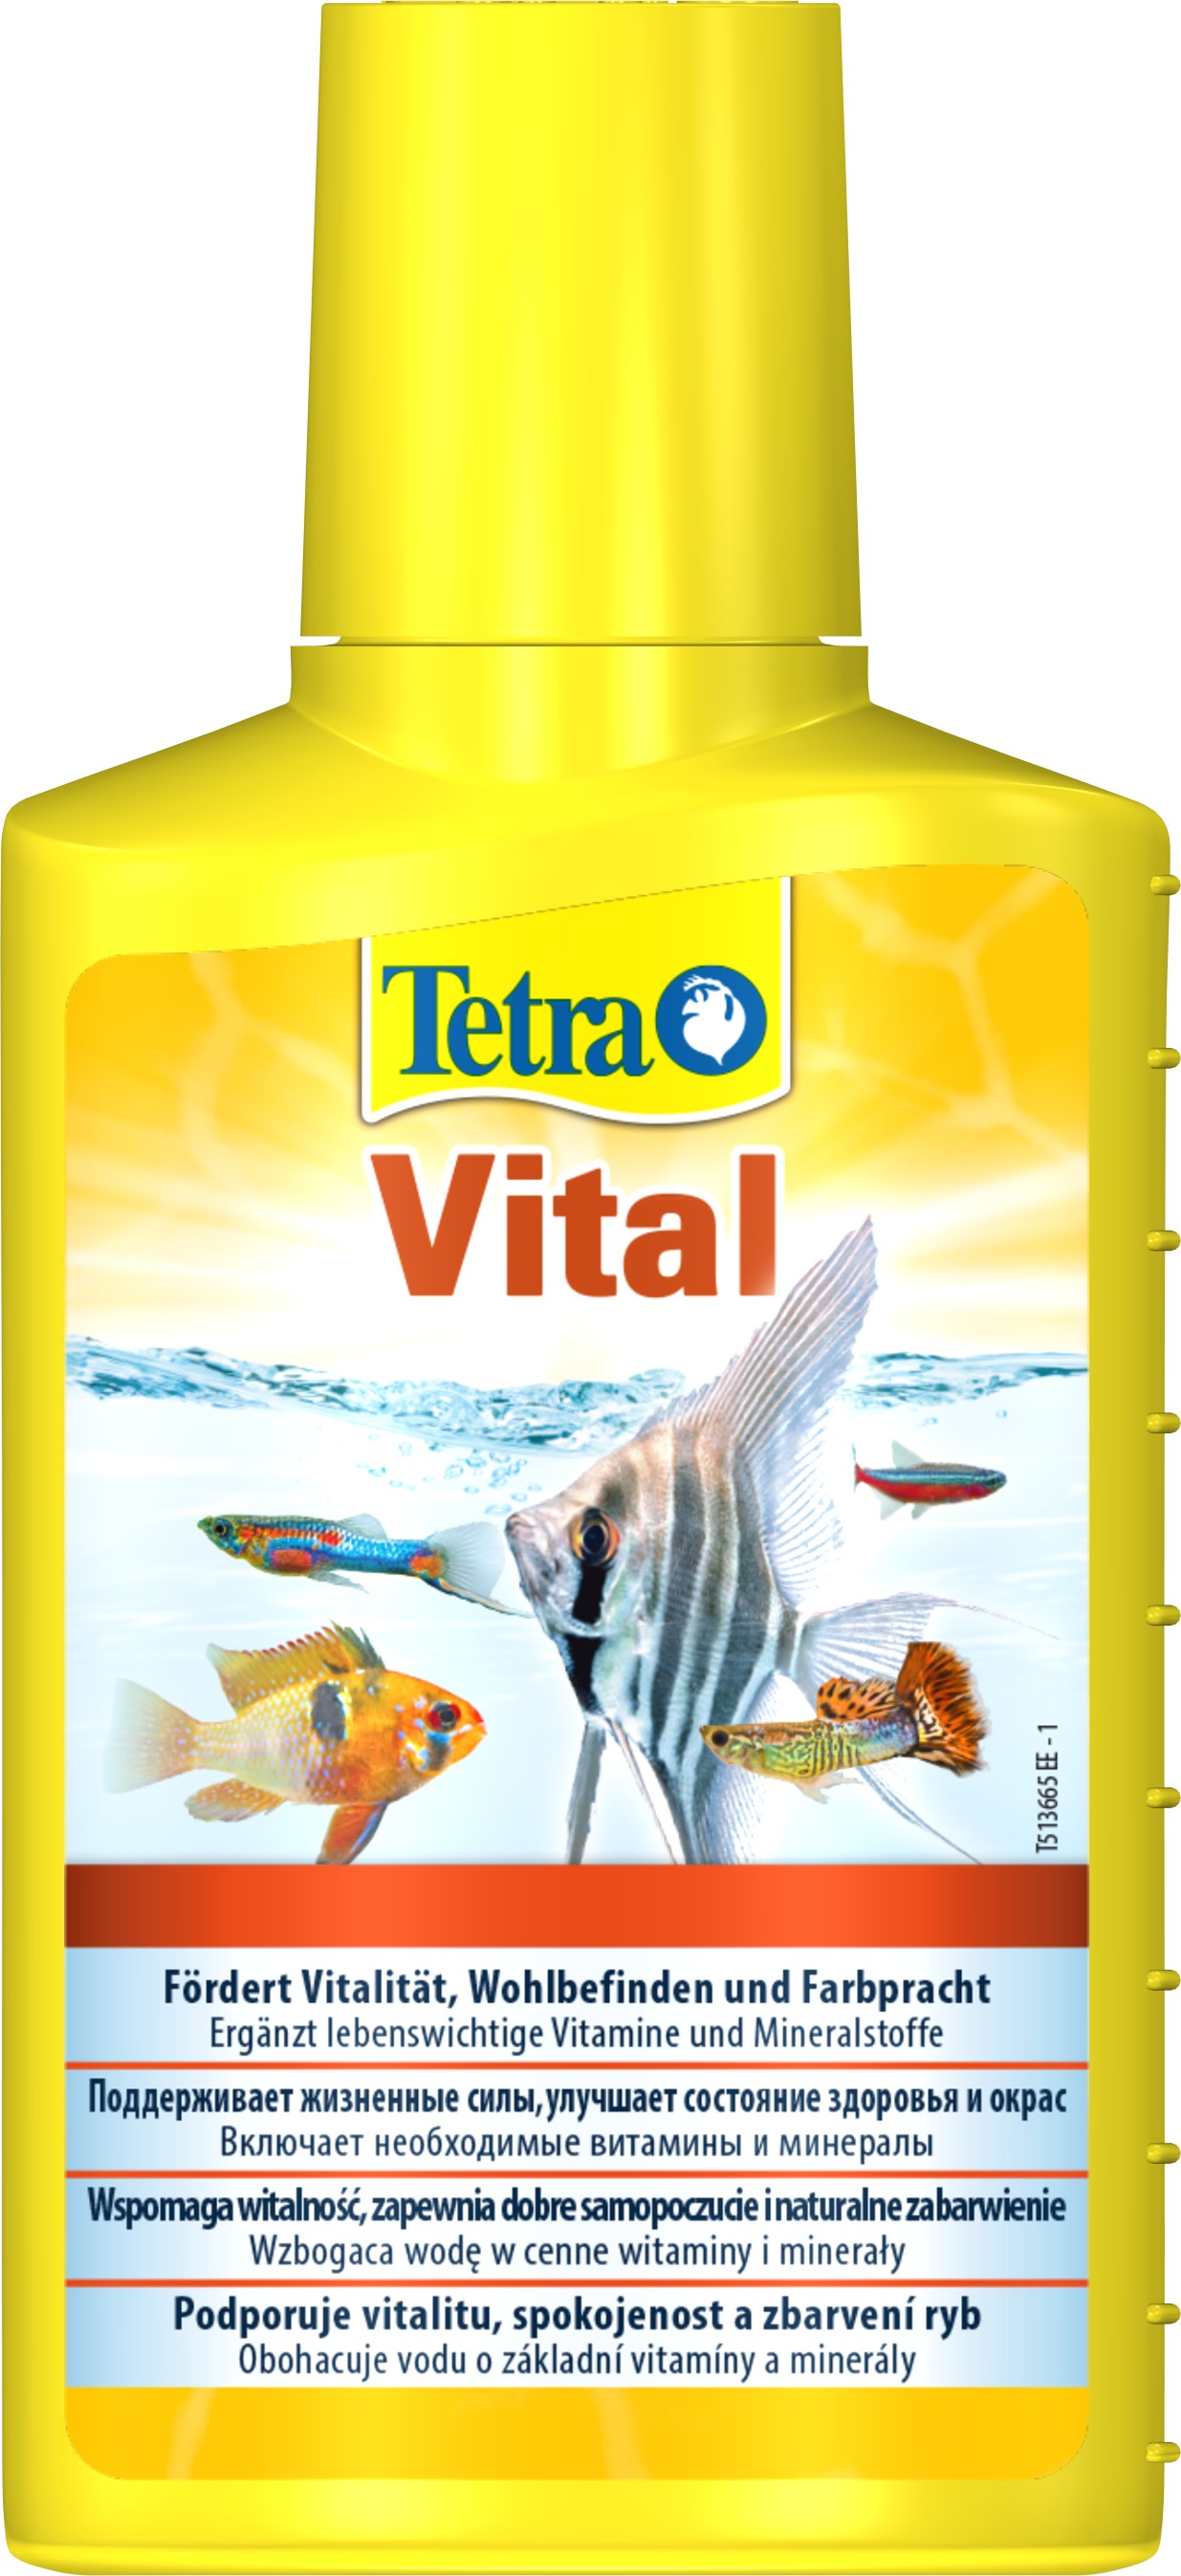 Витаминизированный кондиционер Tetra Aqua Vital, на 200 л аквариумной воды, 100 мл (139237) - фото 1